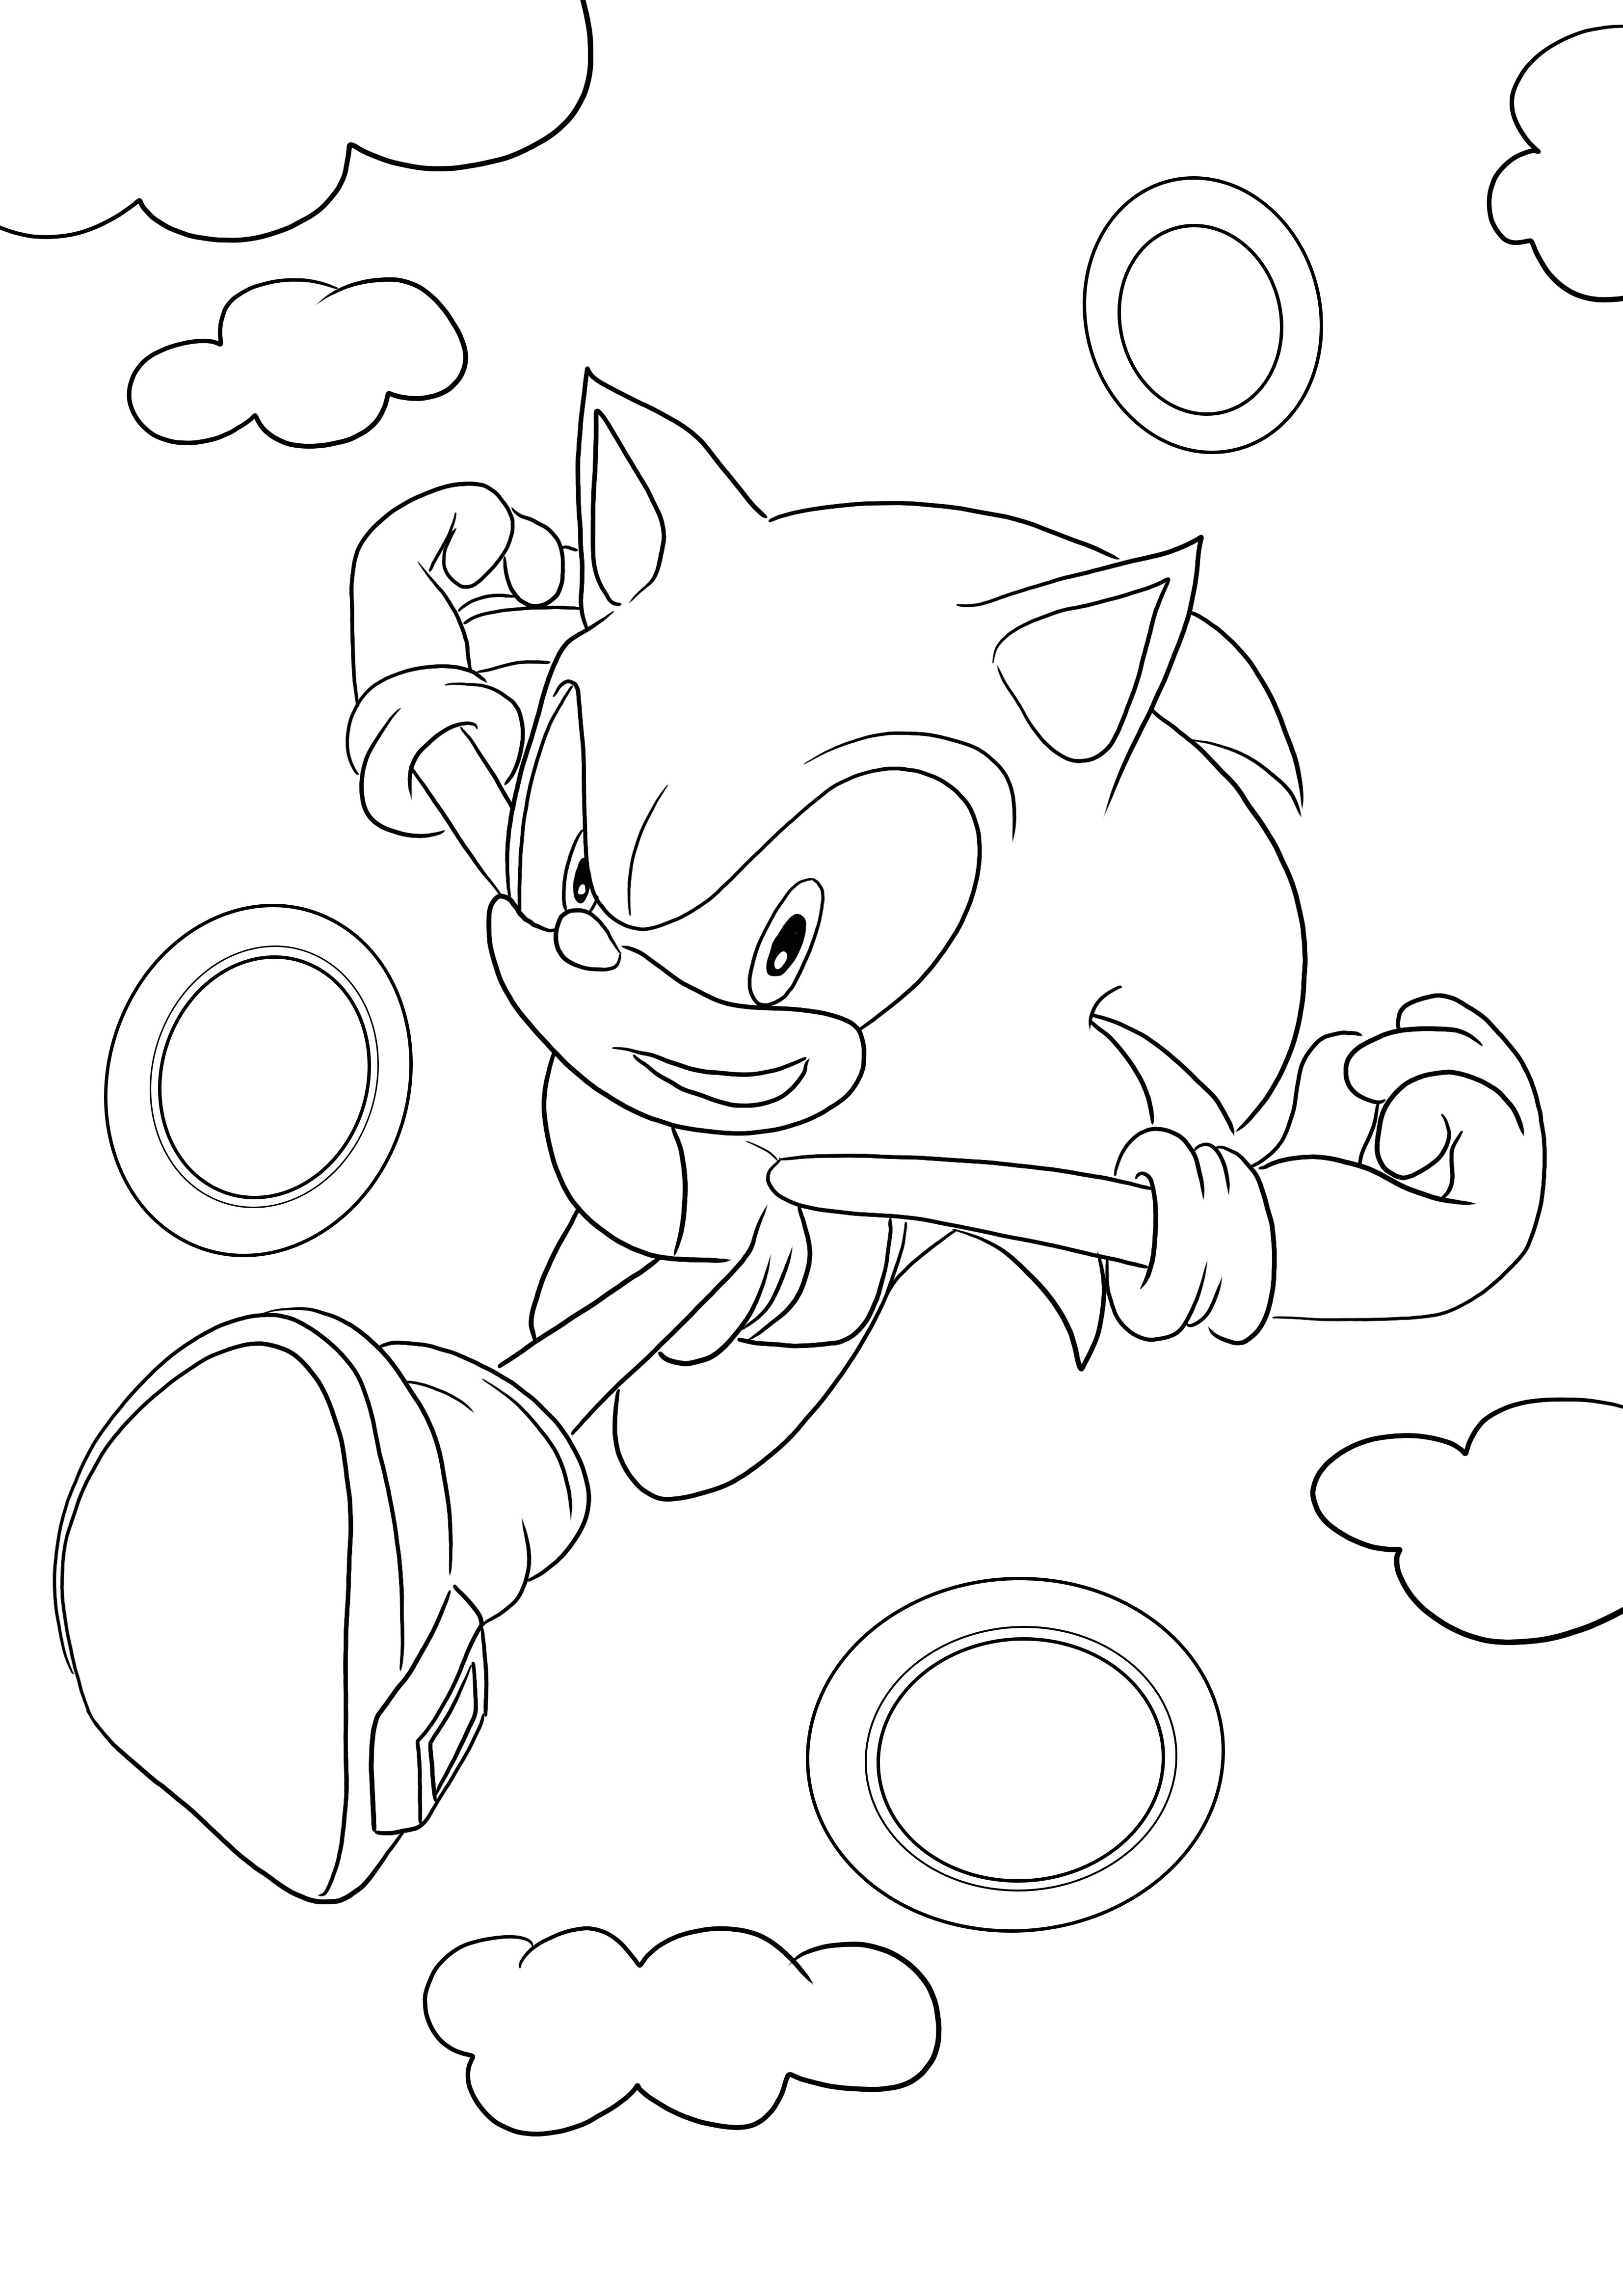 Descărcare și colorare gratuită a lui Sonic care rulează prin inele